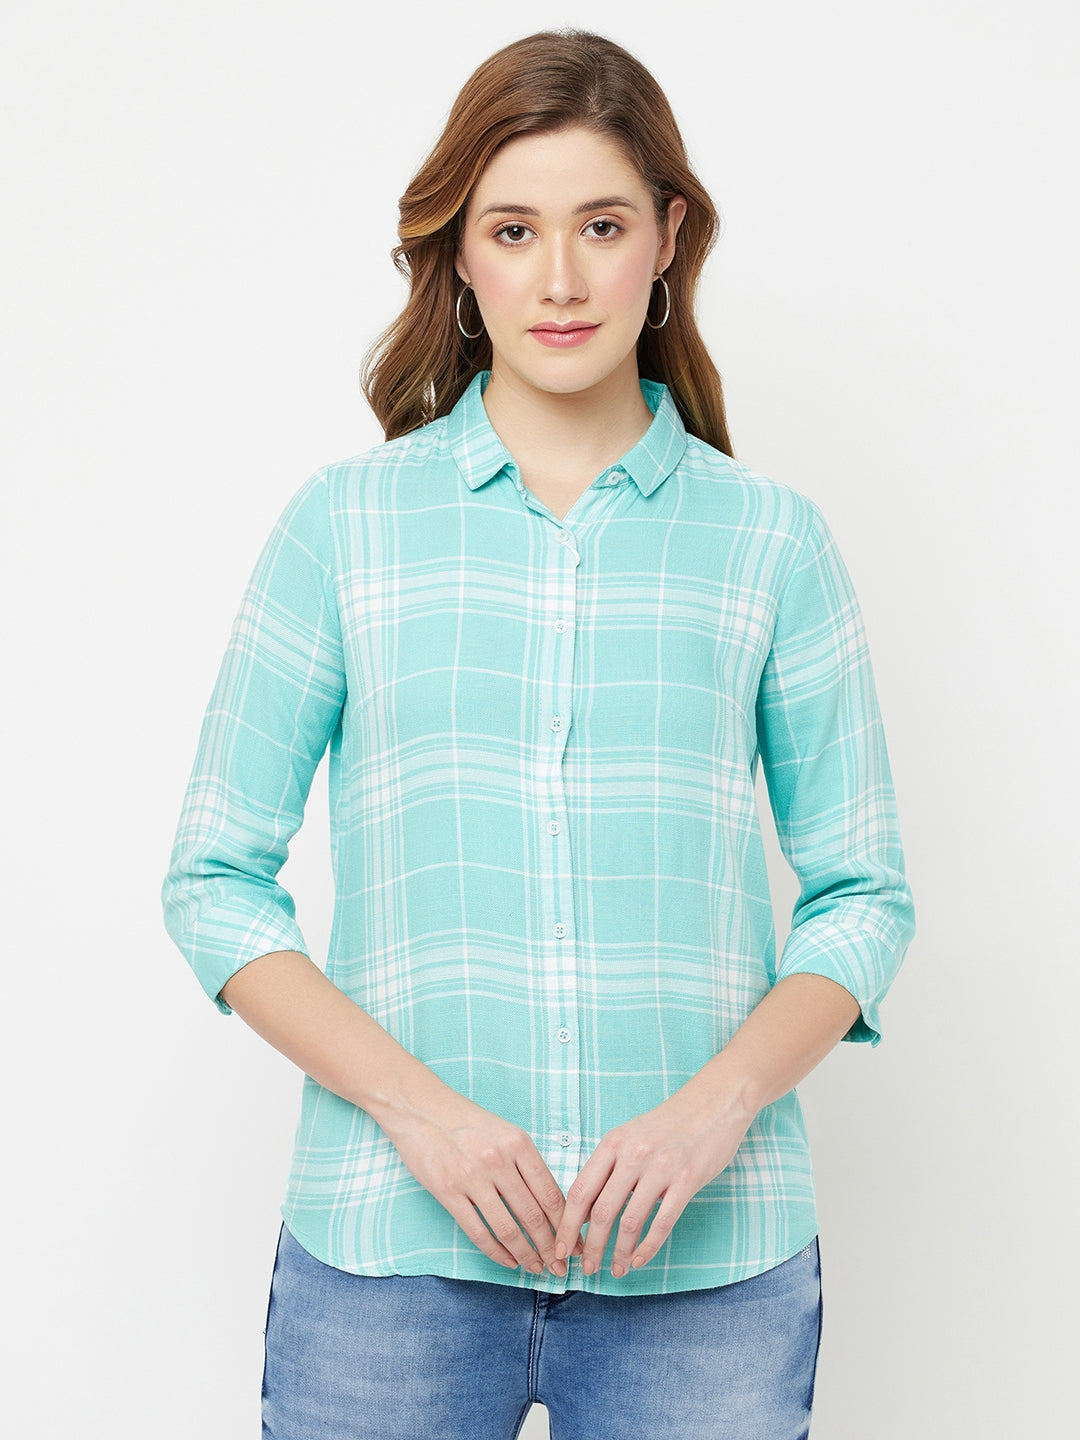 Green Checked Casual Shirt - Women Shirts